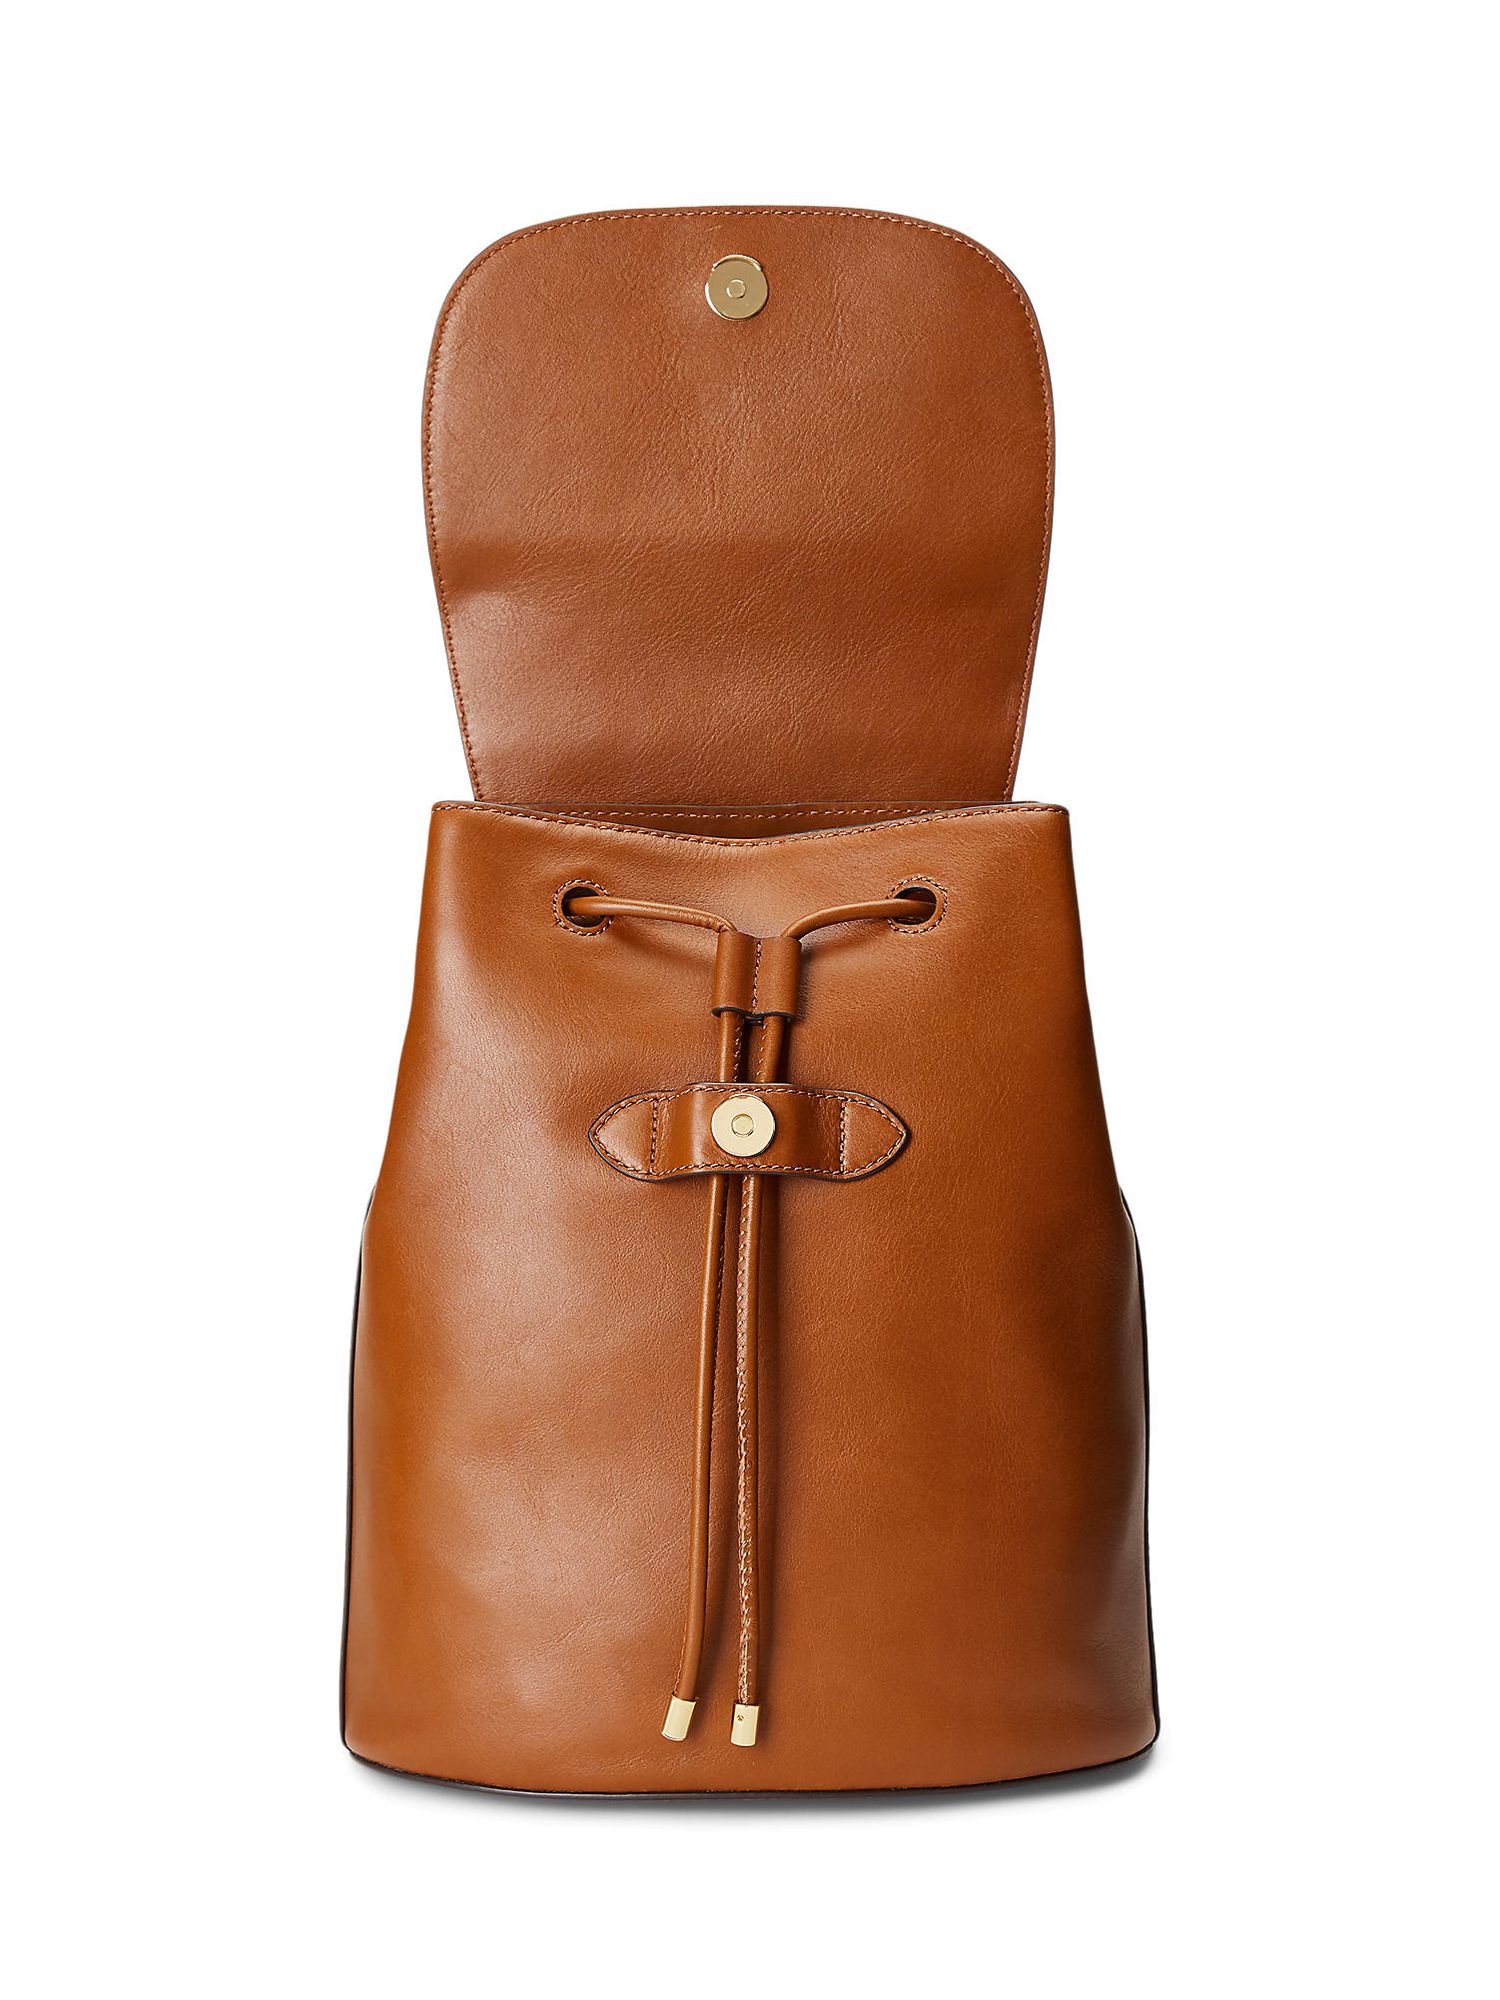 Buy Lauren Ralph Lauren Winny 25 Leather Backpack Online at johnlewis.com